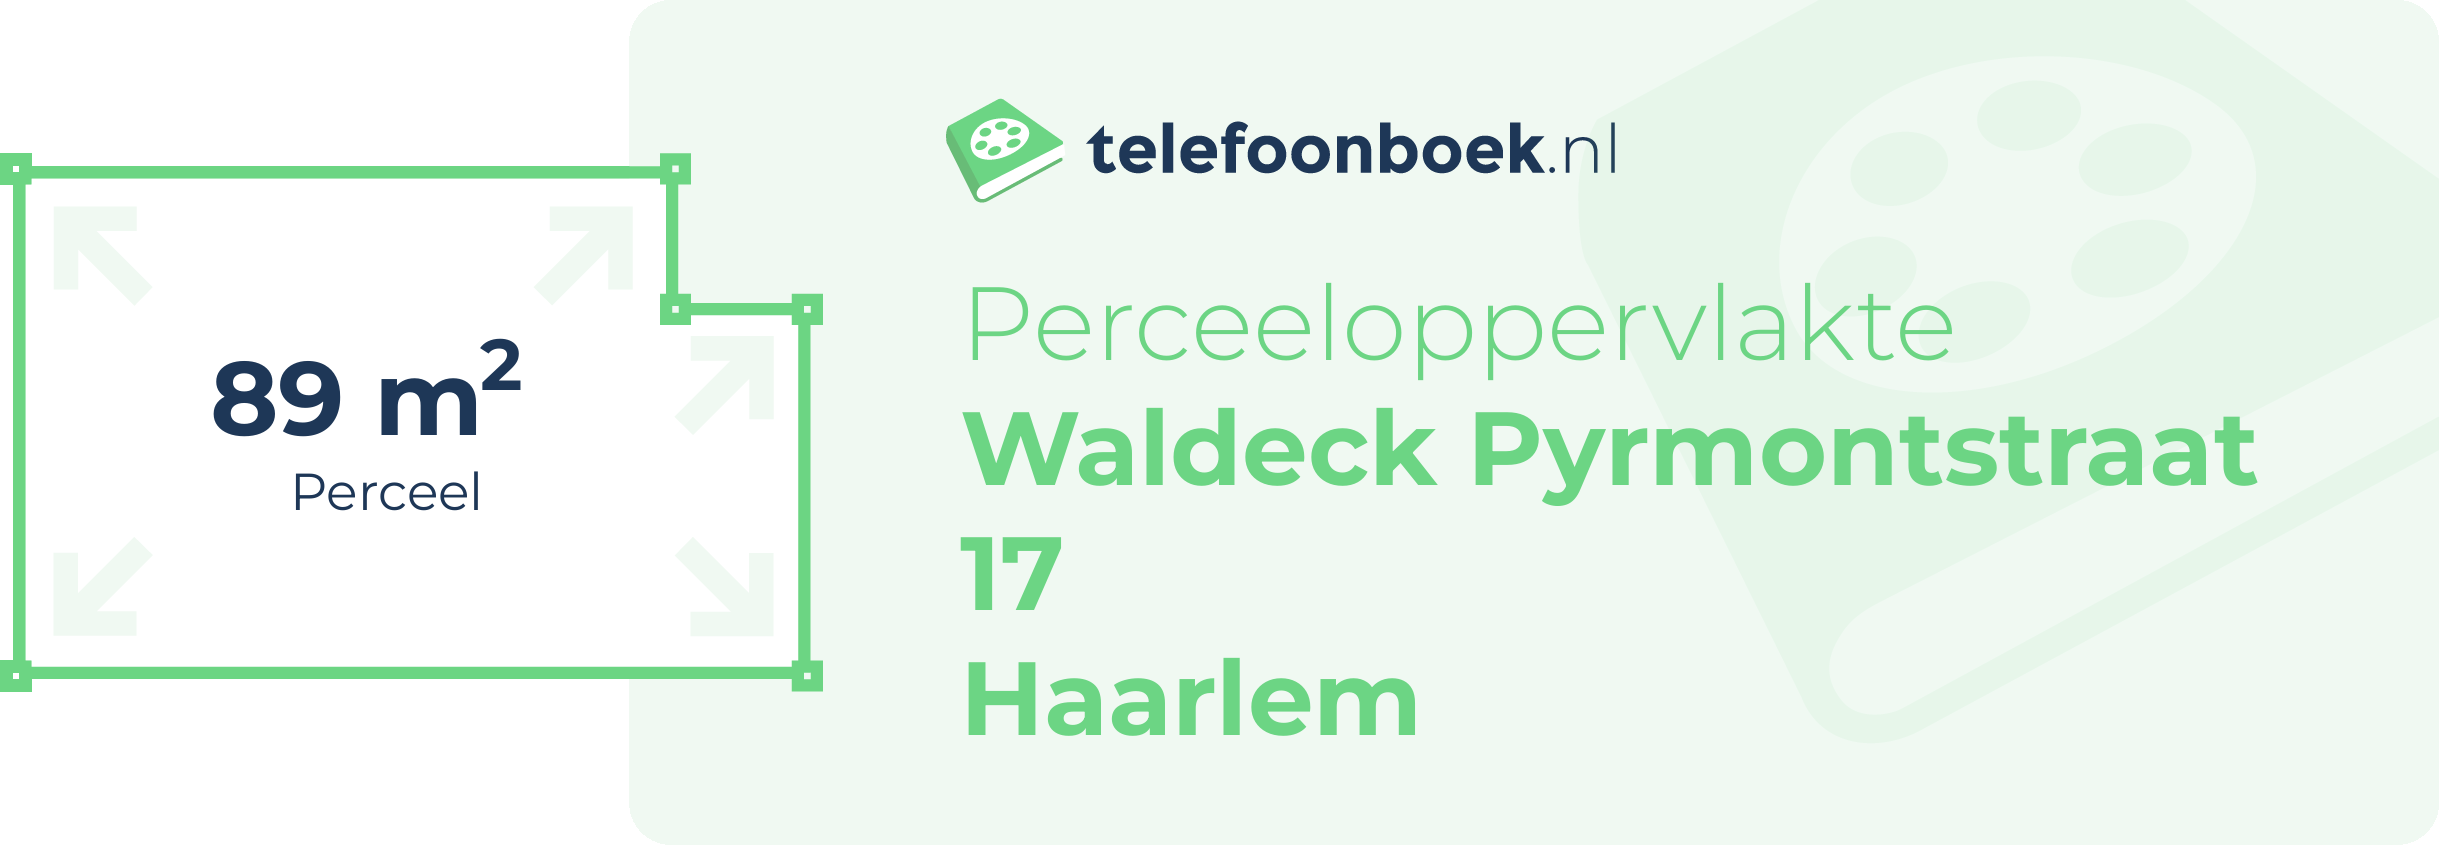 Perceeloppervlakte Waldeck Pyrmontstraat 17 Haarlem